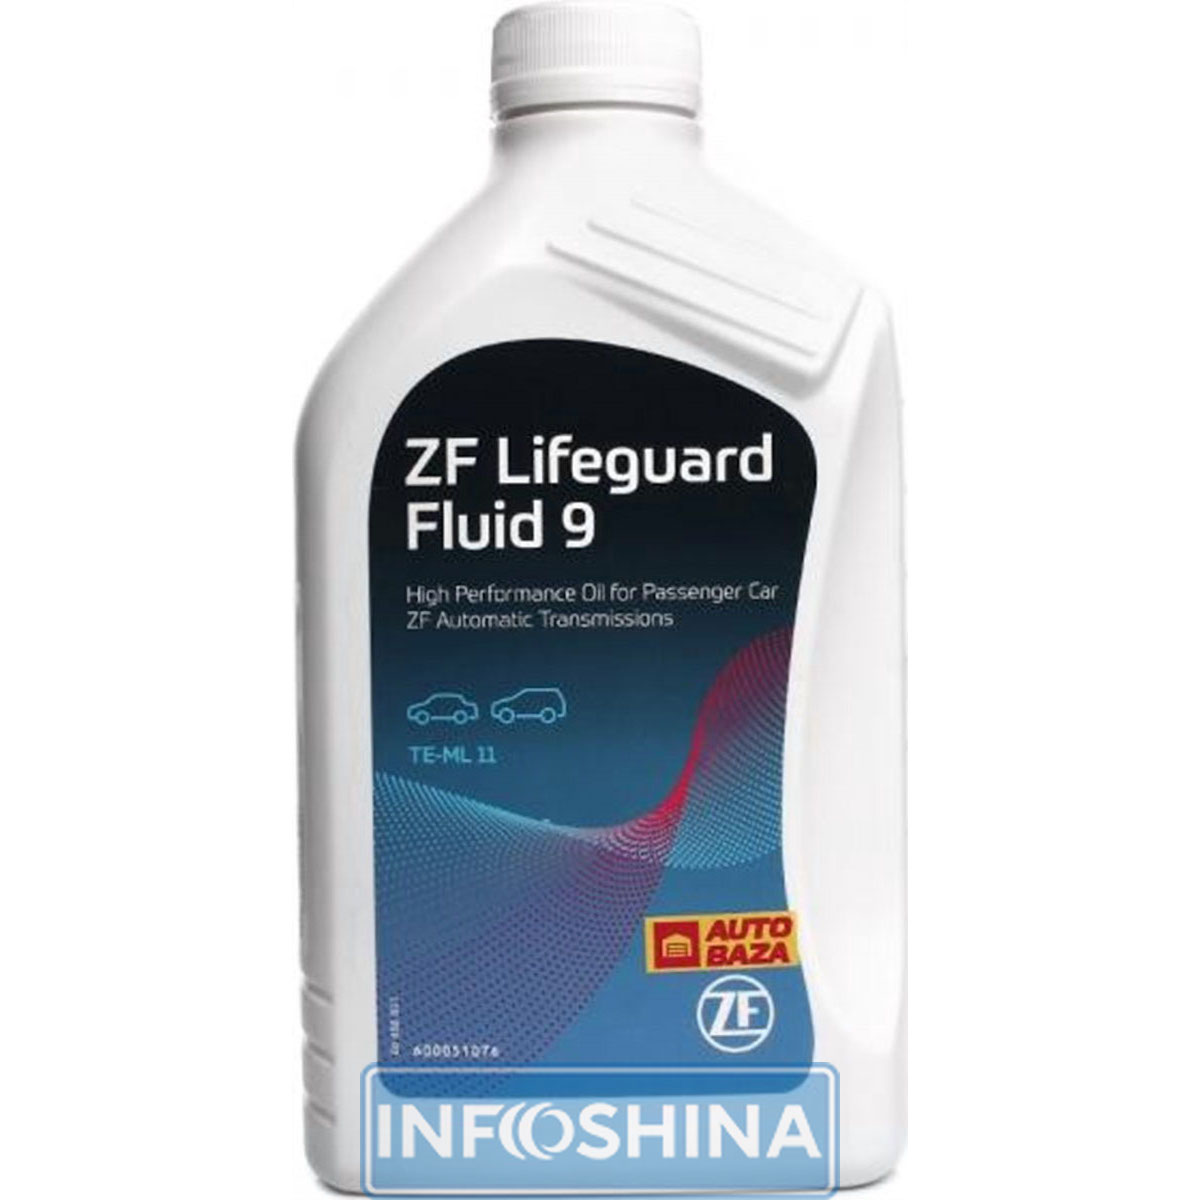 Купить масло ZF LifeguardFluid 9